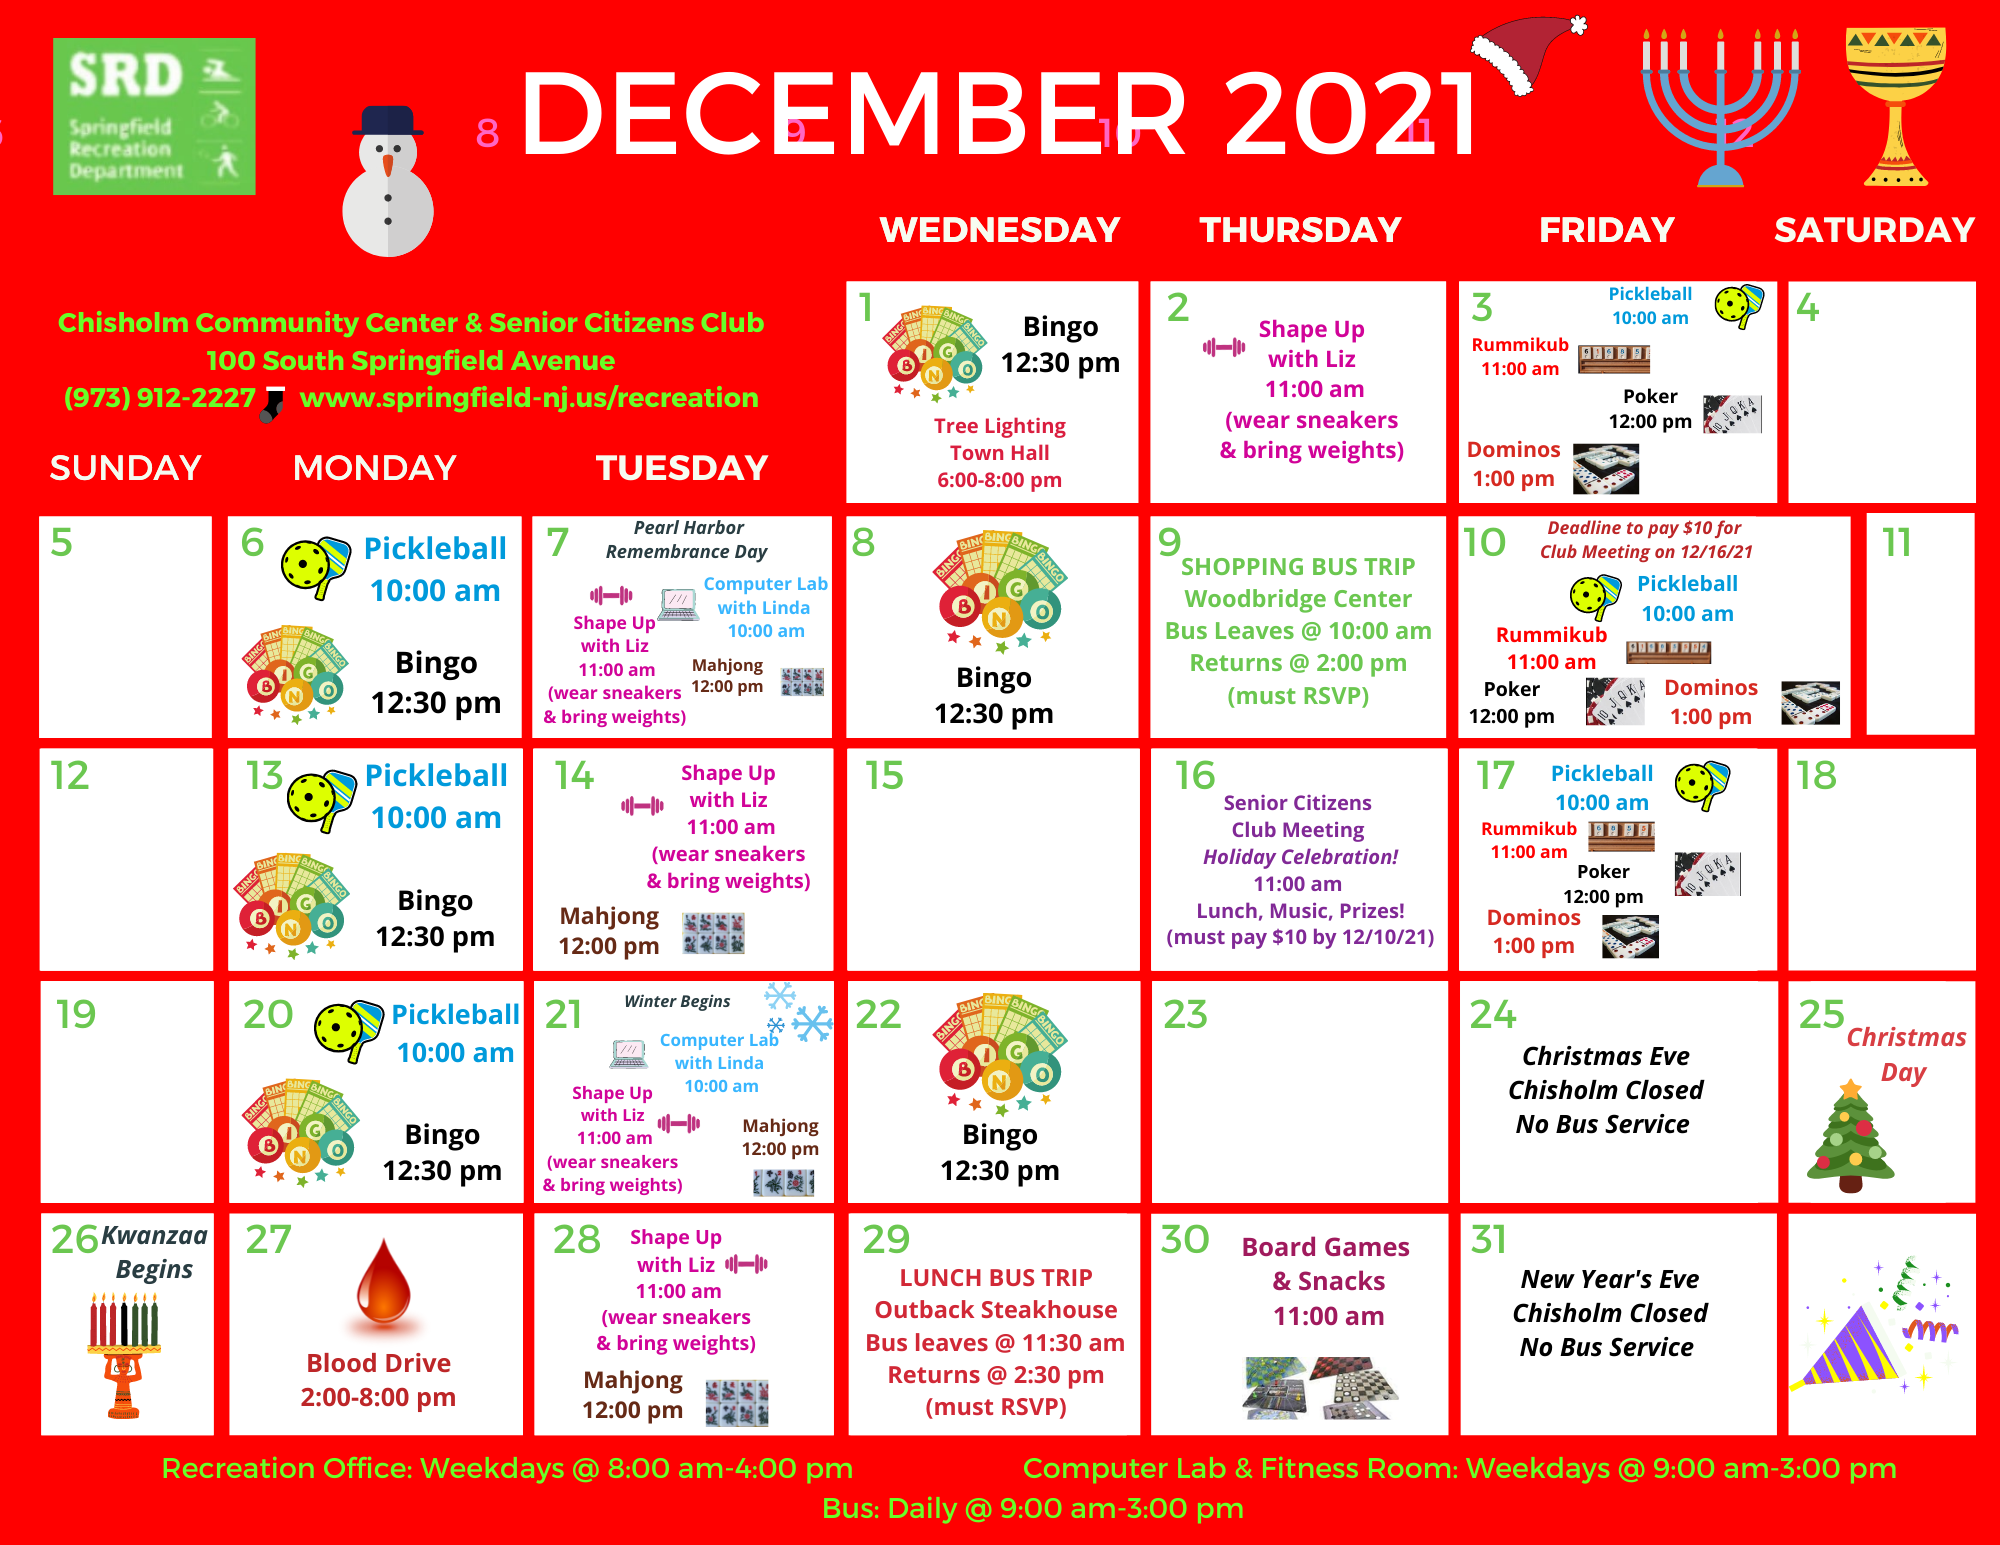 Recreation Department Releases December 2021 Calendar for Senior